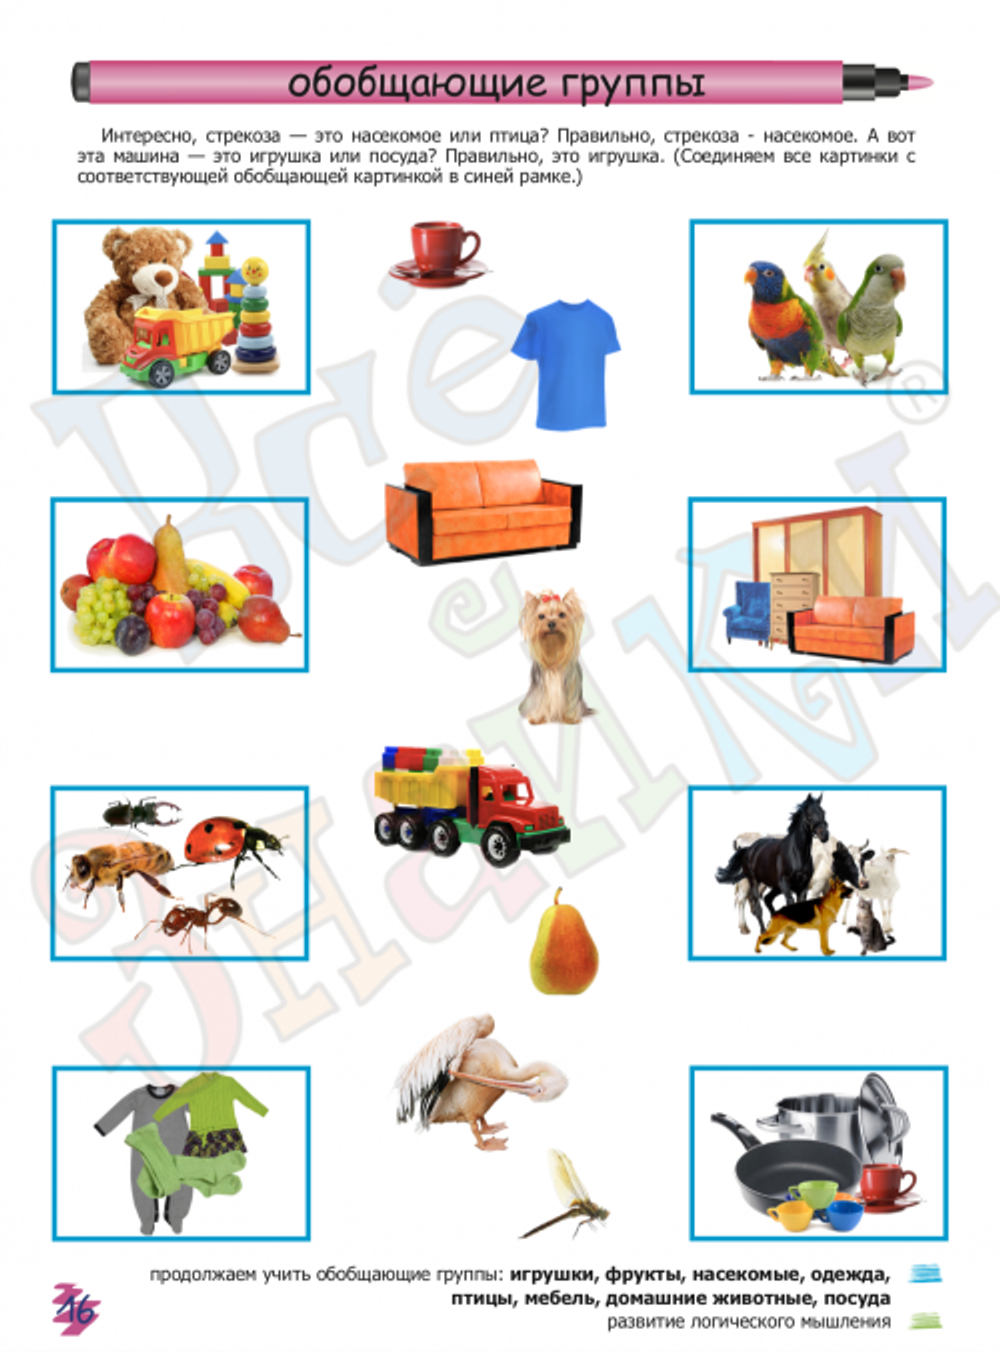 Детский ГУМ - товары для детей: одежда, обувь, игрушки